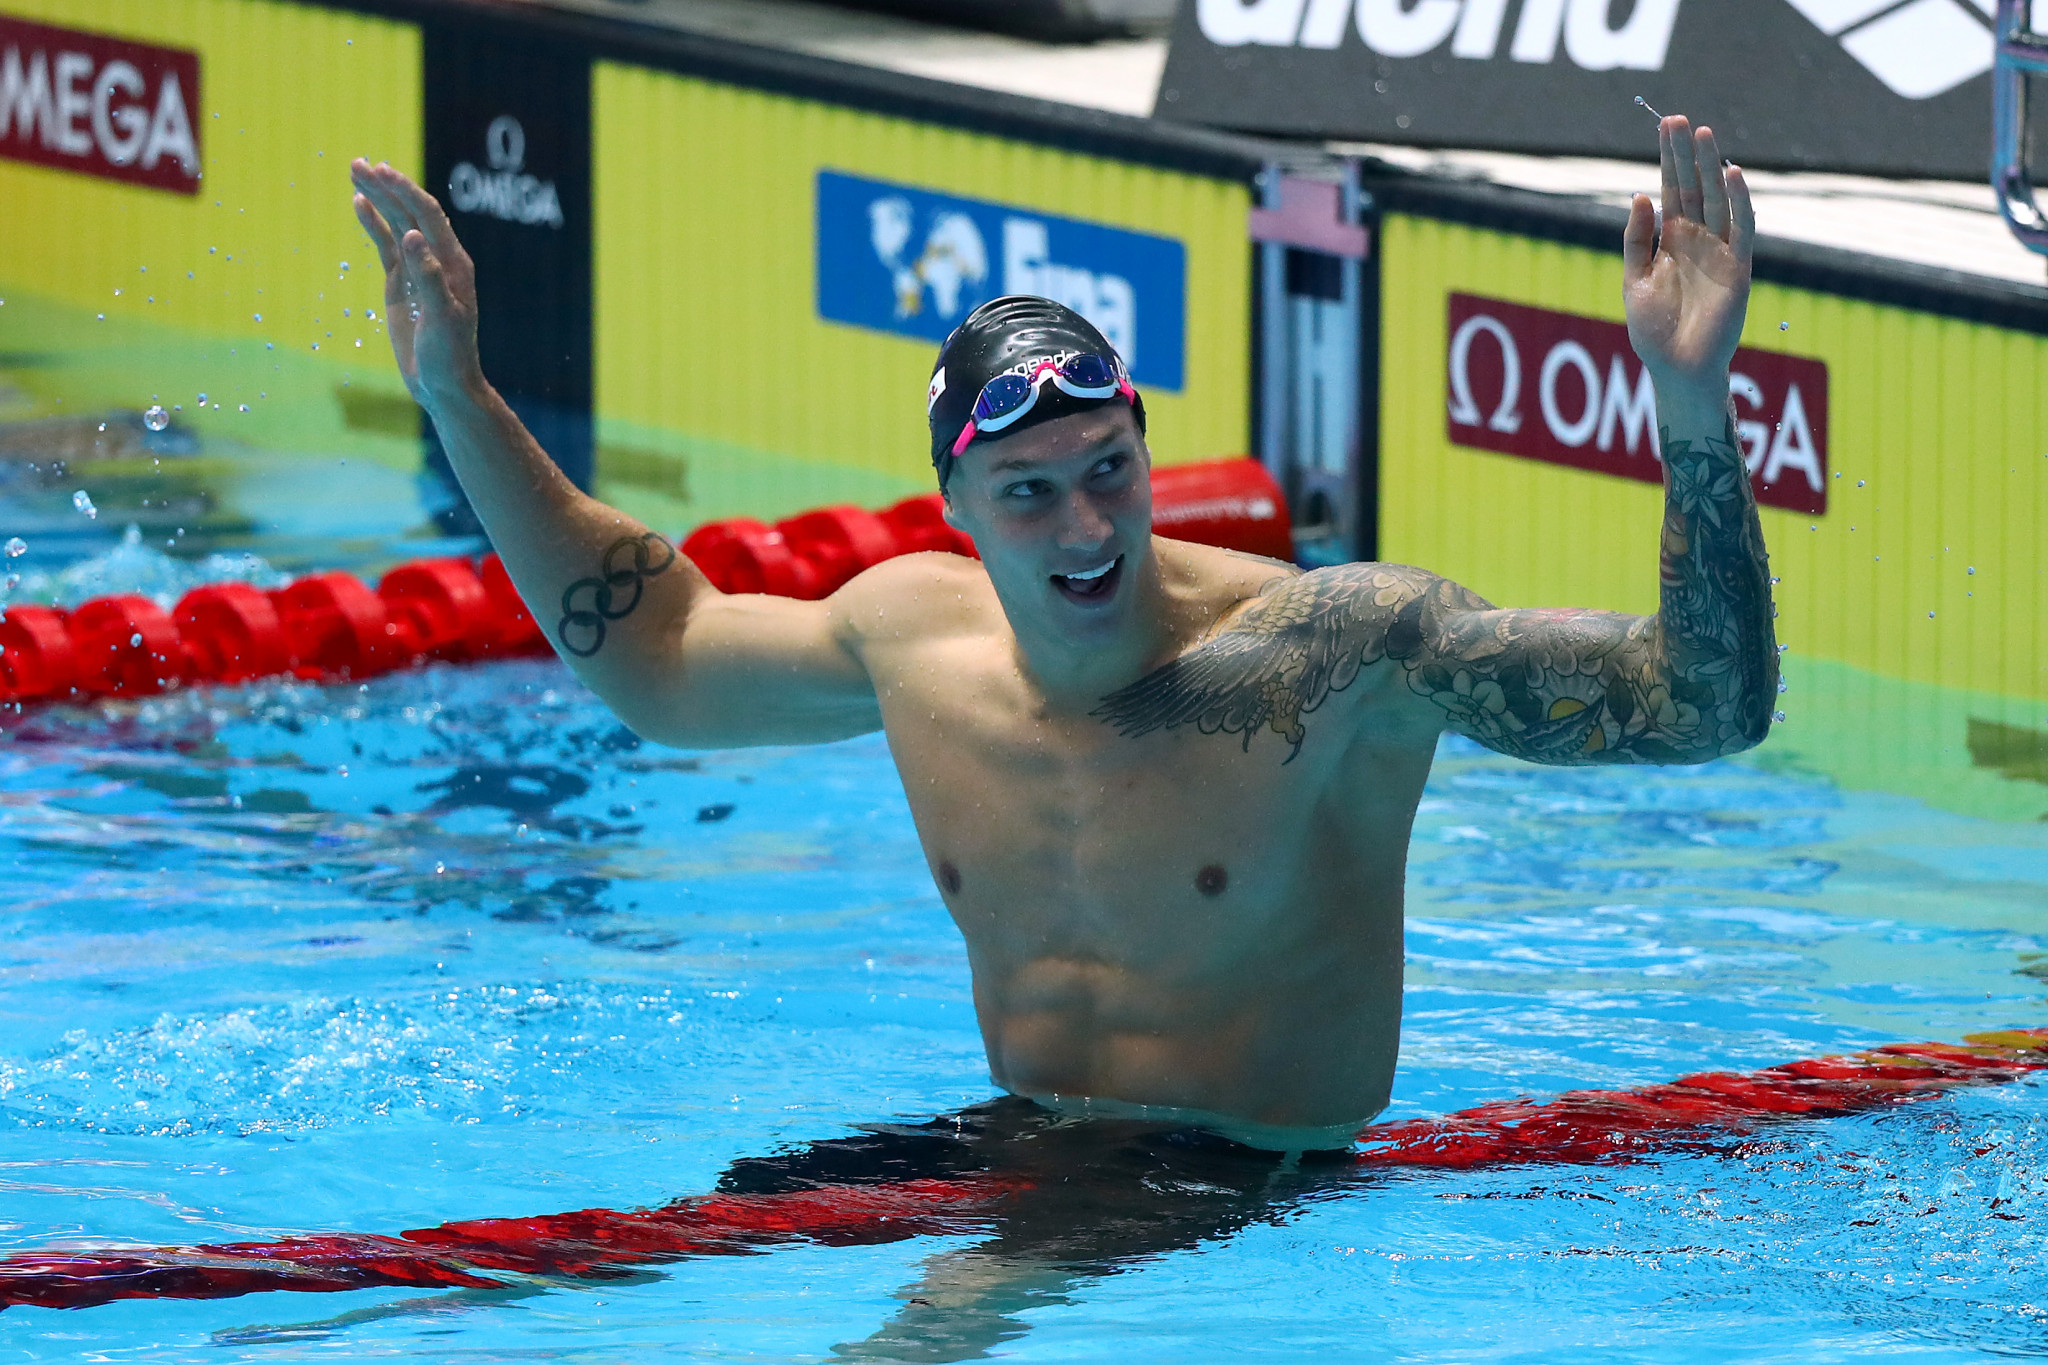 Swimmer Dressel to wear banned body suit in bid to break 20-second barrier 